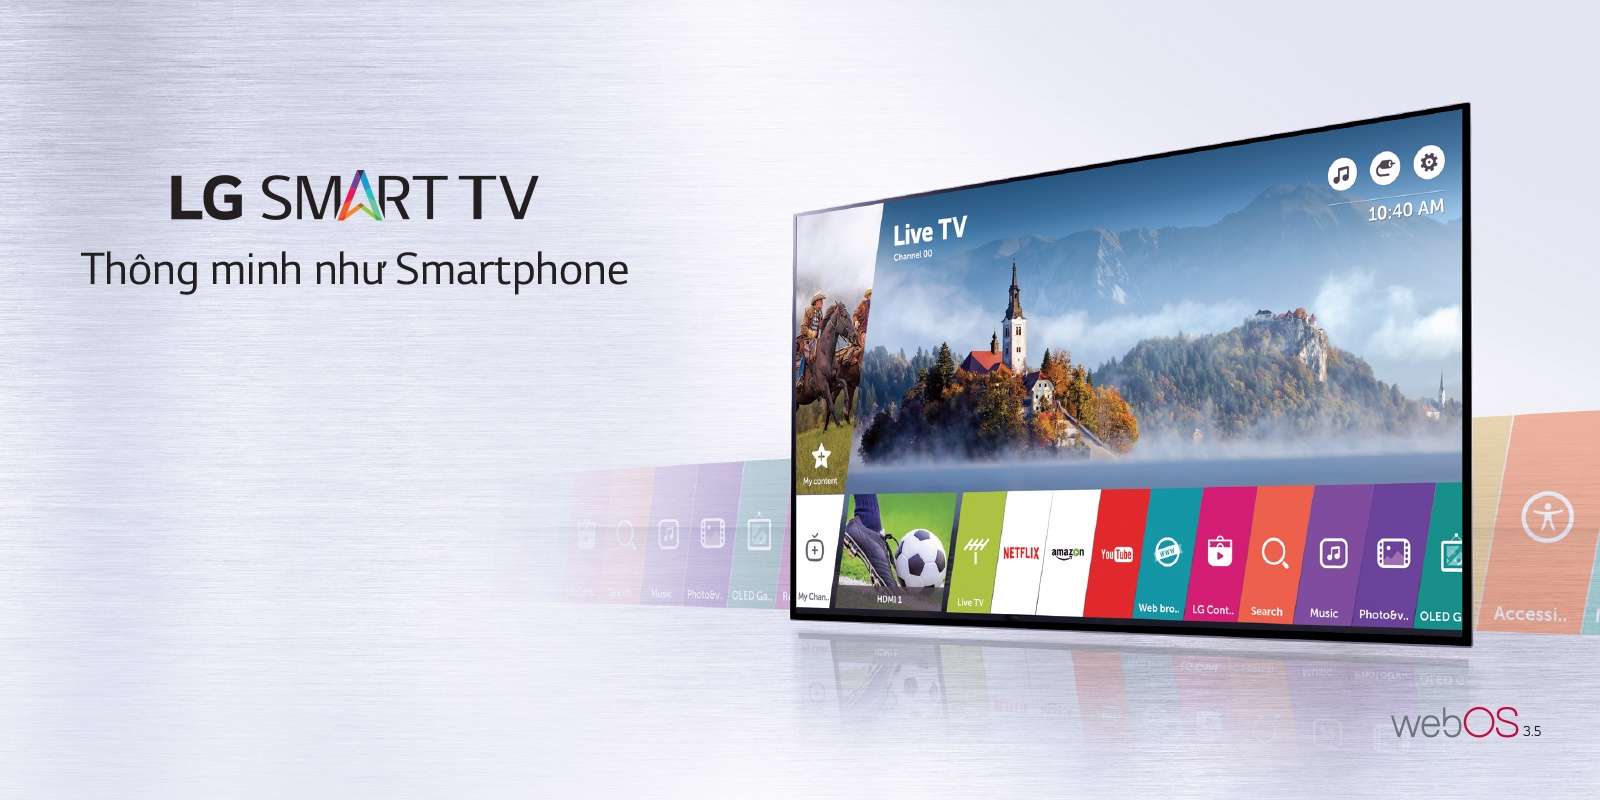 DT-VT Thành Phát – Sửa tivi LED, LCD 4K ở tại Huế. Tel 0989639869